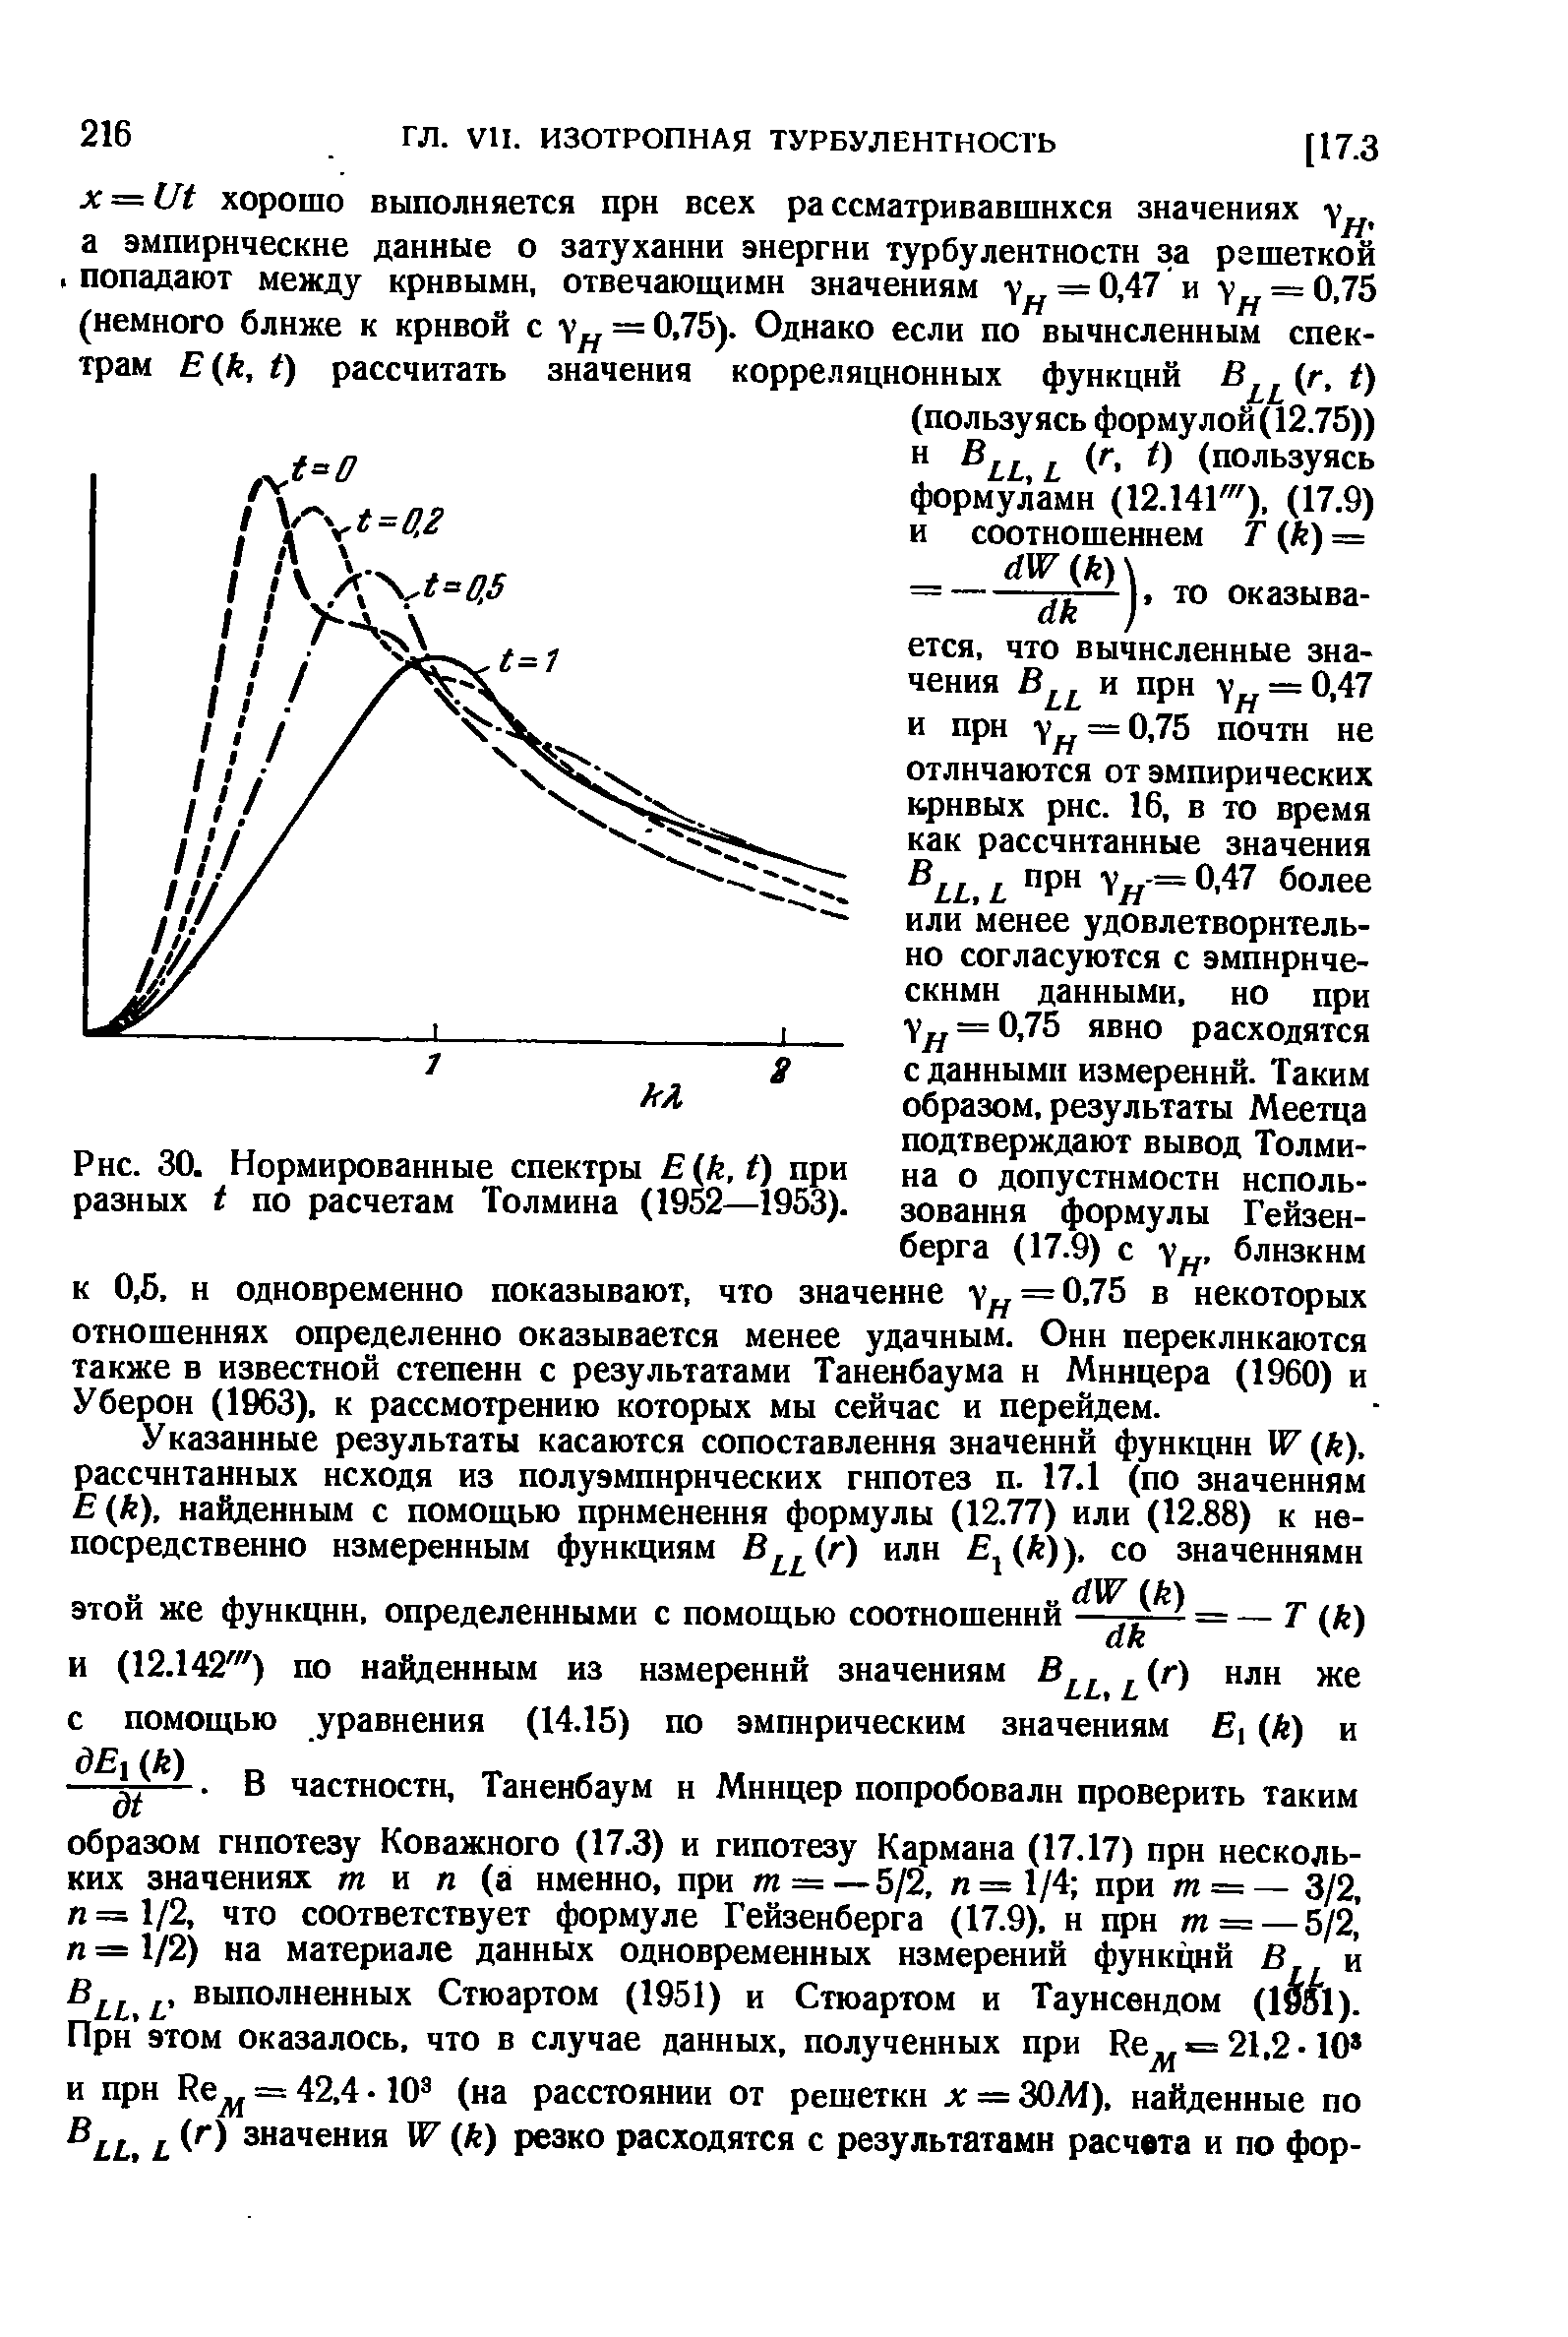 Нормированные спектры к, О при разных по расчетам Толмина (1952—1953).
